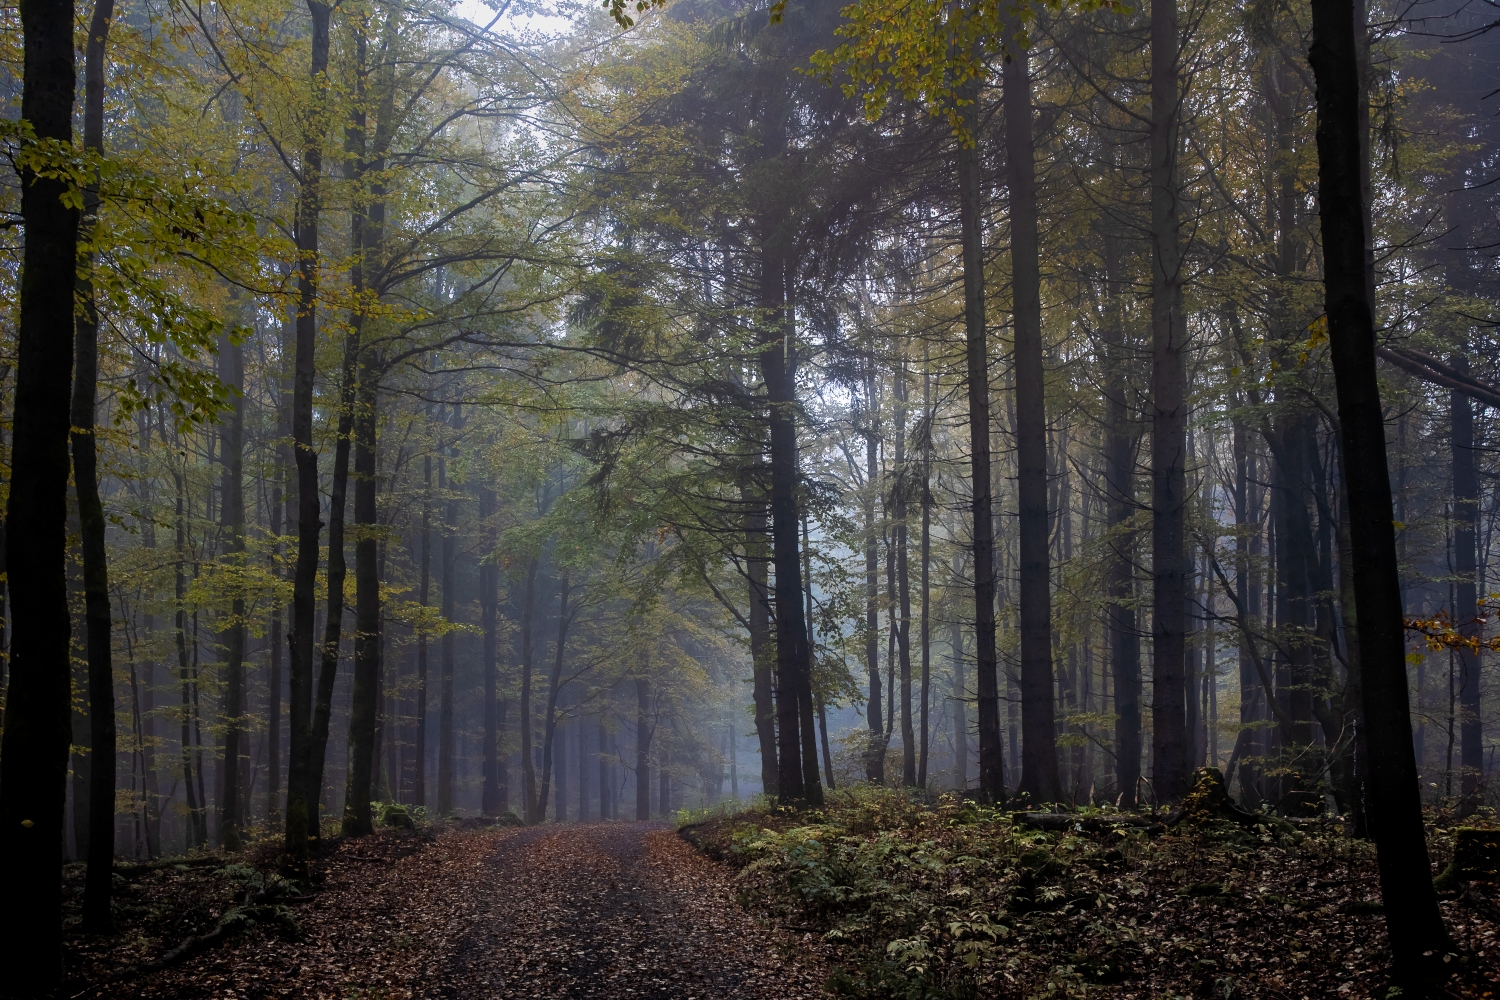 leichter Nebel im herbstlichen Thüringer Wald in der Nähe des Adlersberg bei Vesser Canon EOSR6 & EF 35mm f/1.4l ii usm